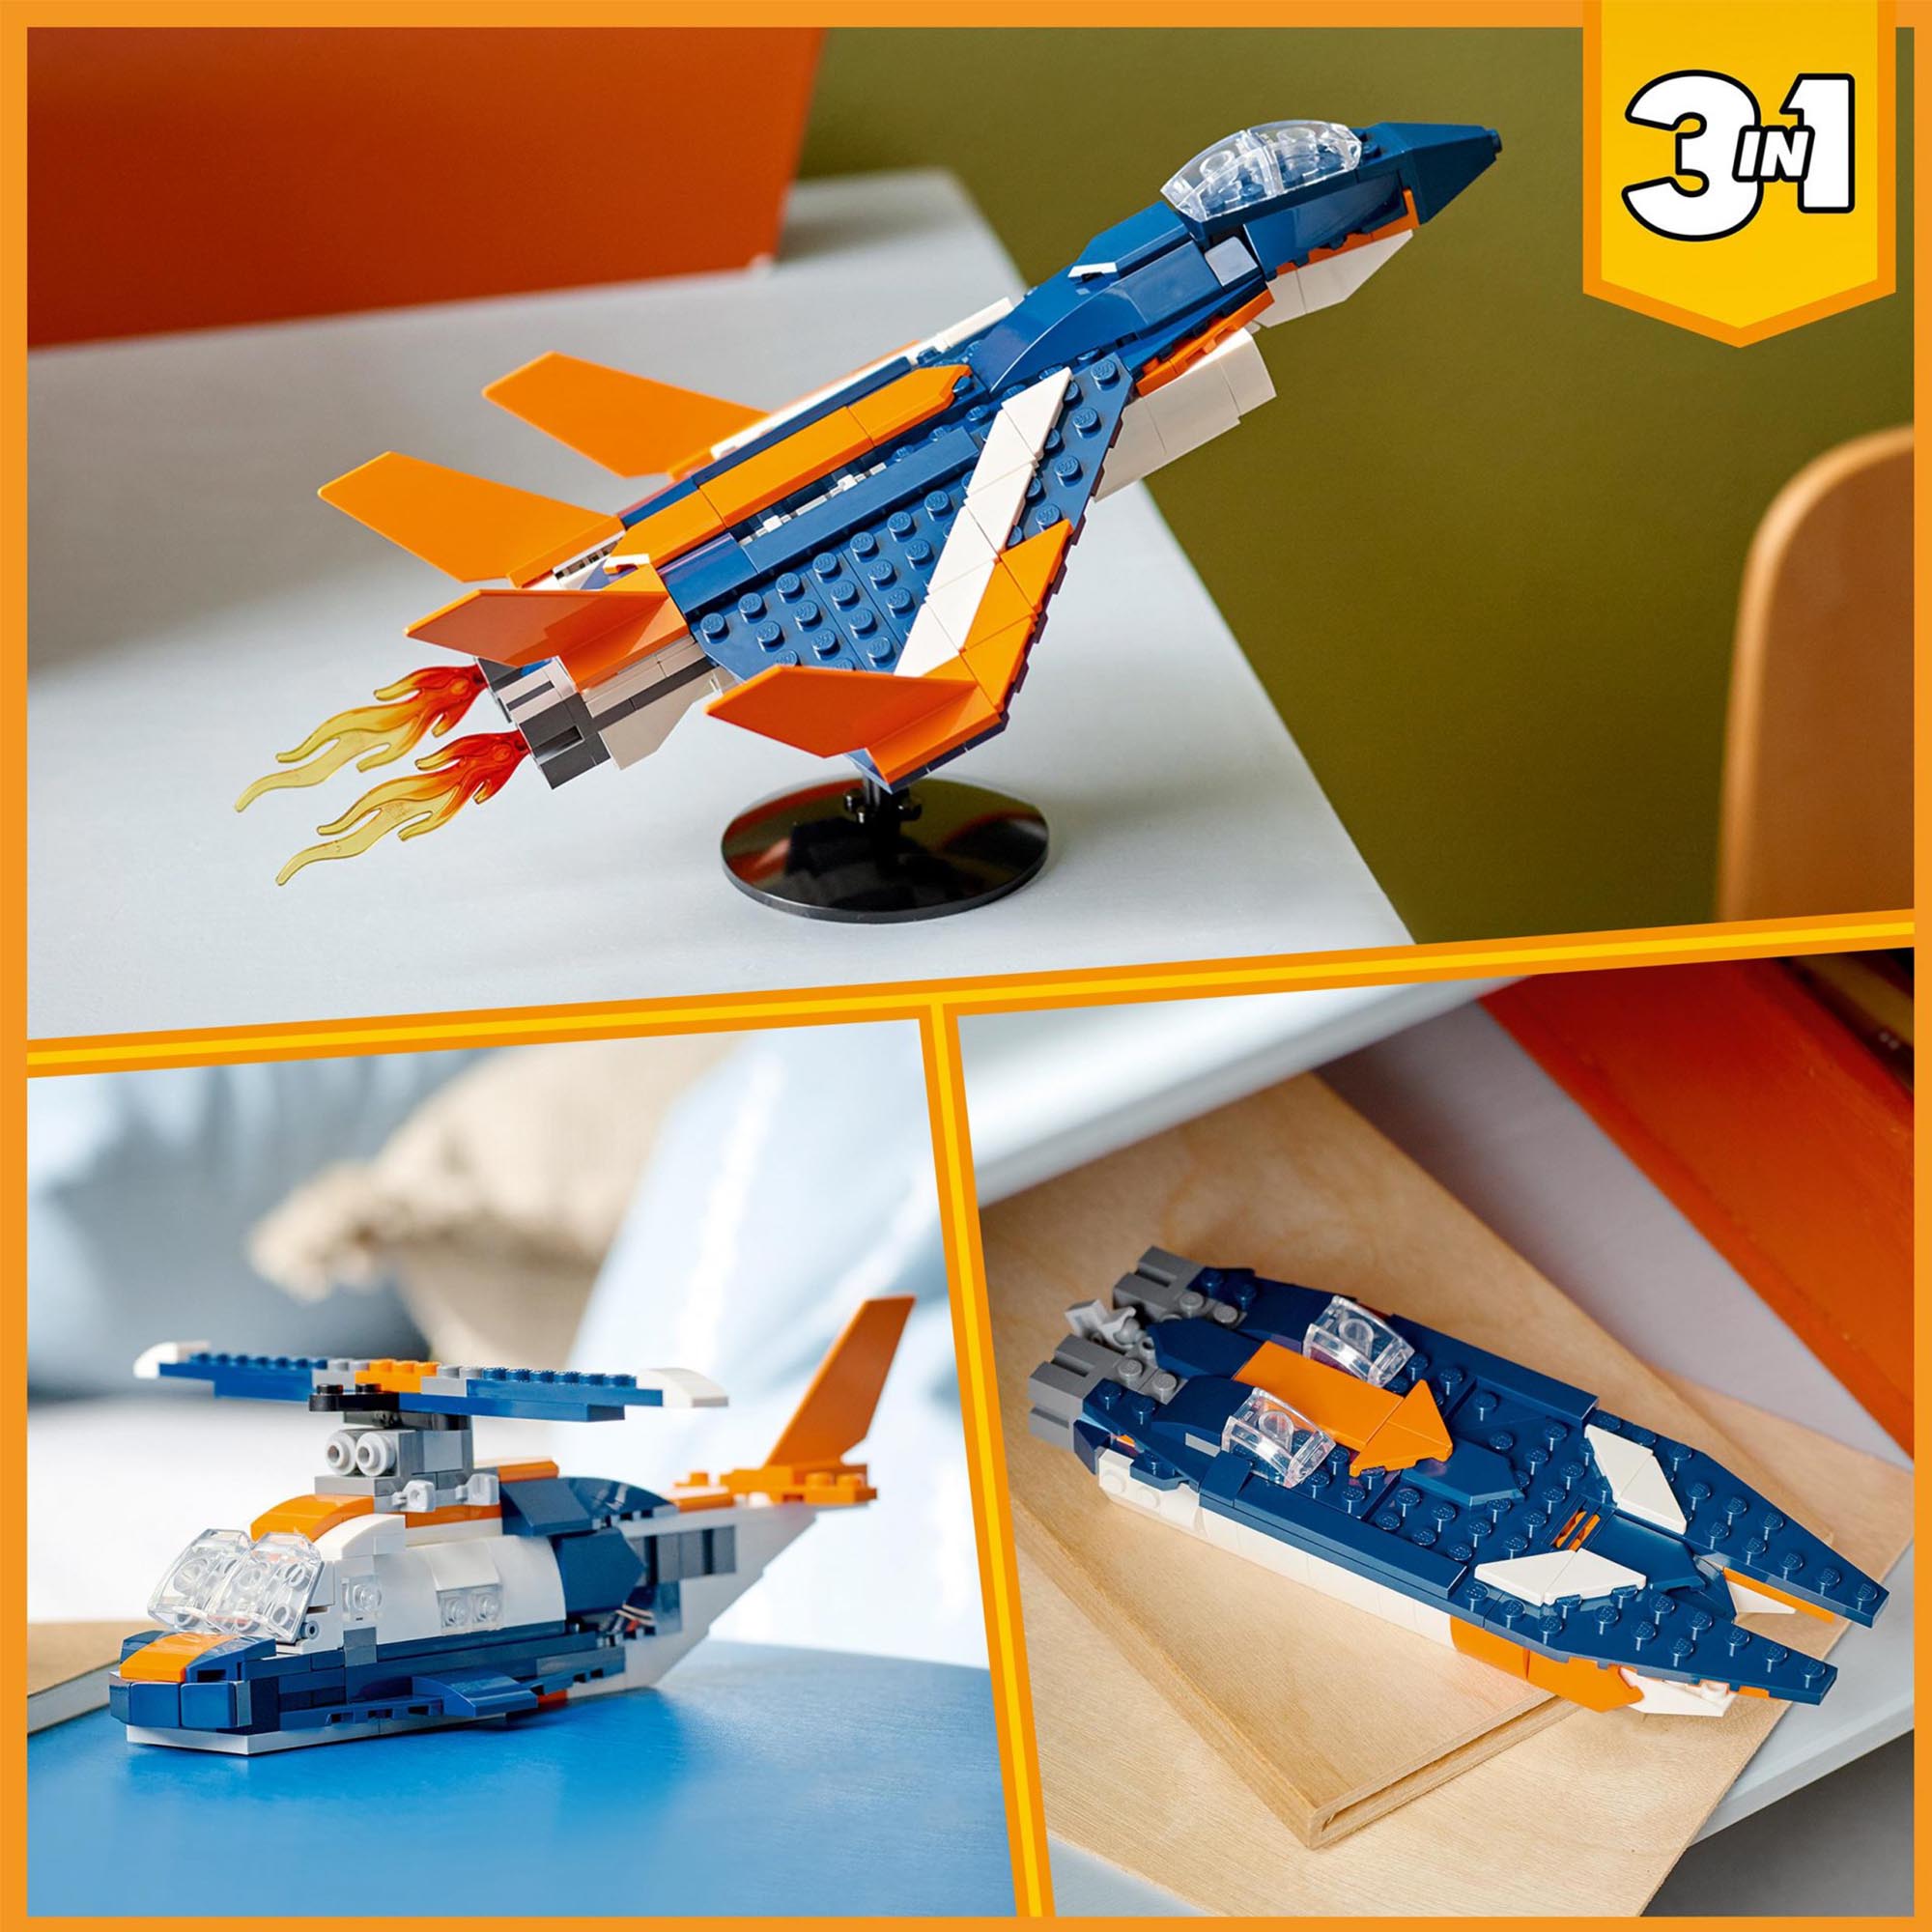 LEGO 31126 Creator 3in1 Jet Supersonico, Giocattoli Creativi di Costruzione per  31126, , large